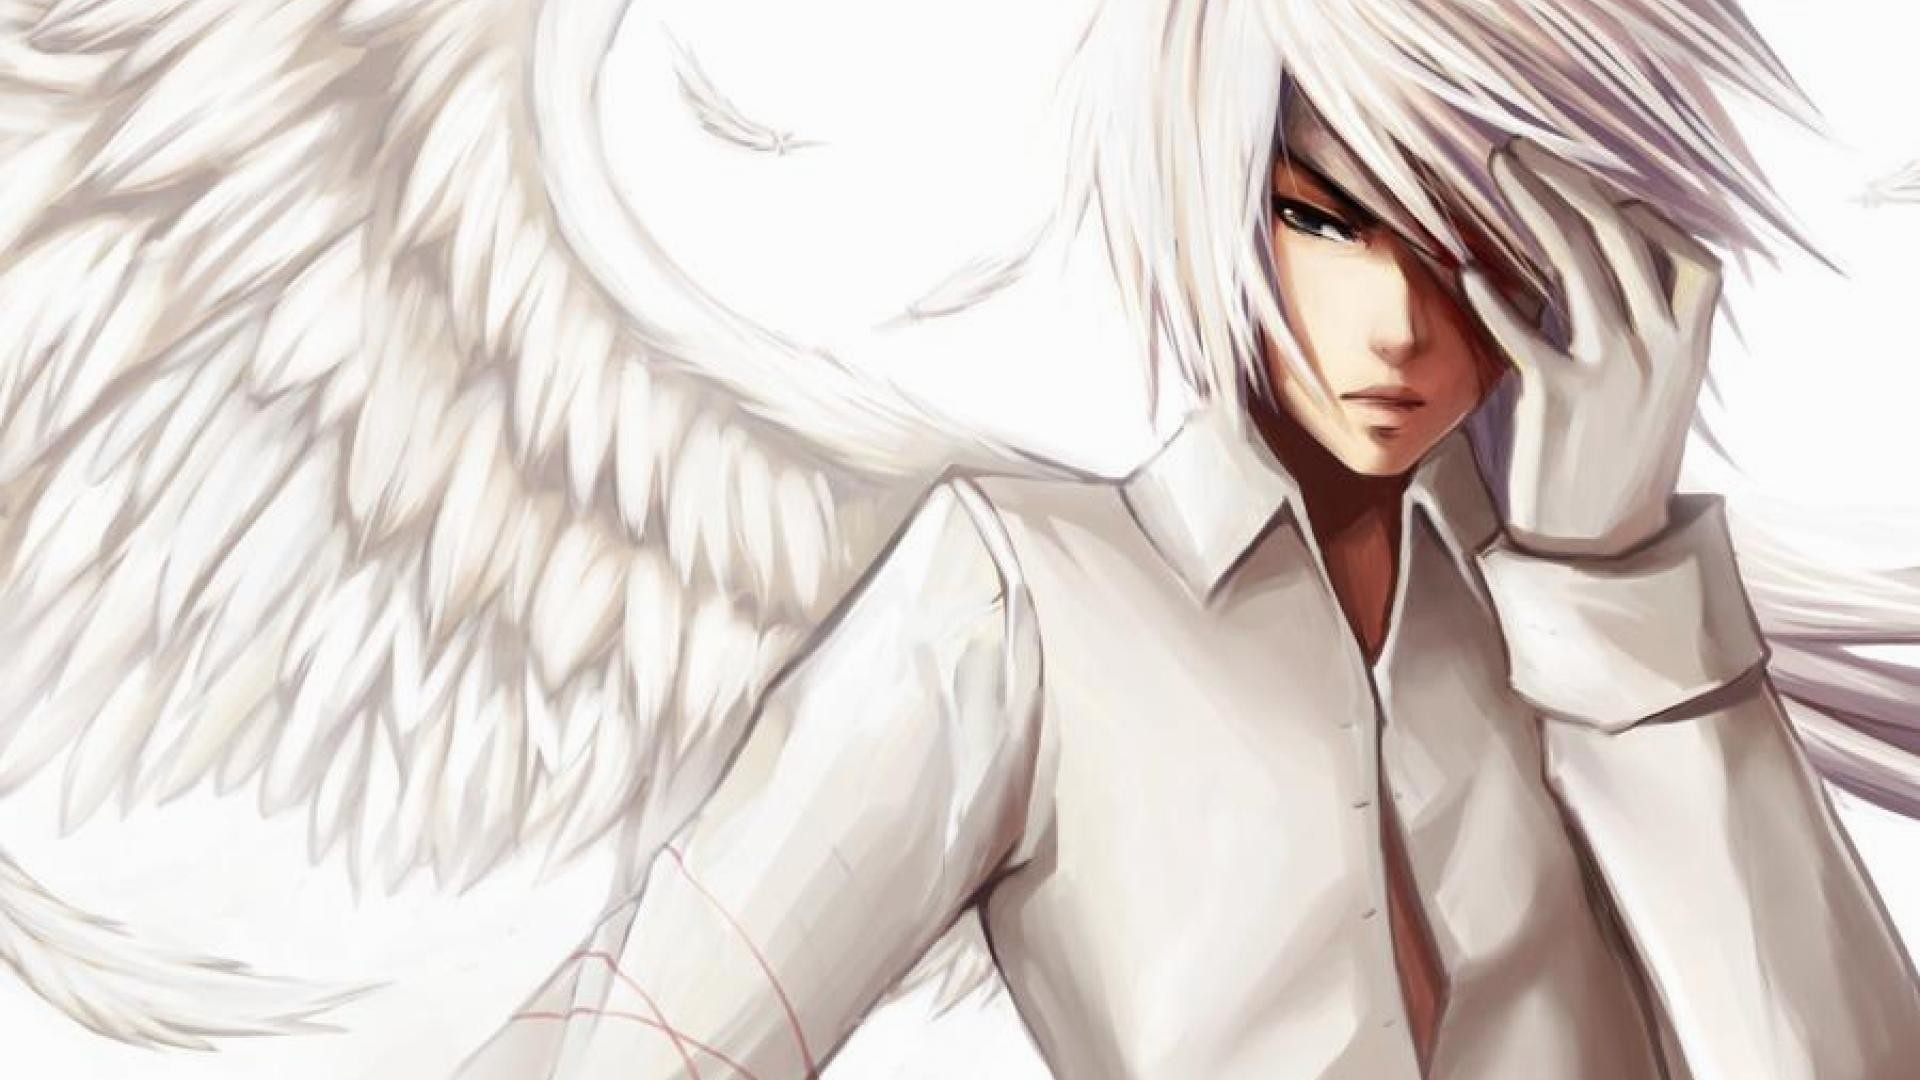 Wallpaper.wiki White Anime Boy Angel Wallpaper PIC